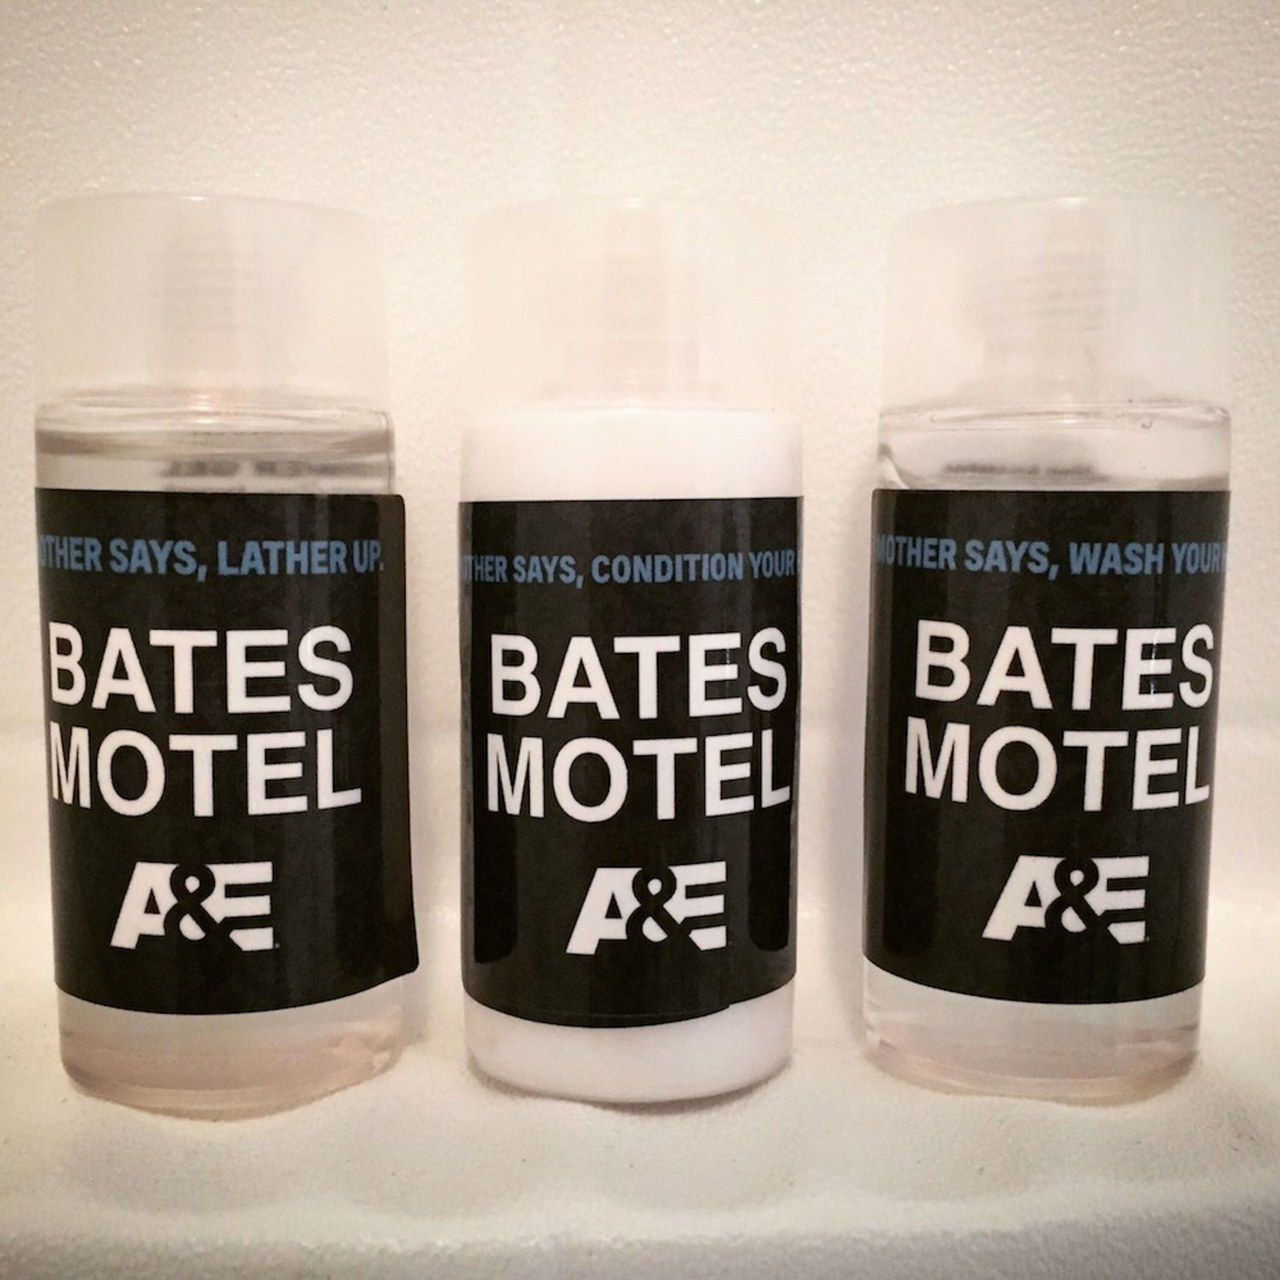 Bates motel sxsw toiletries